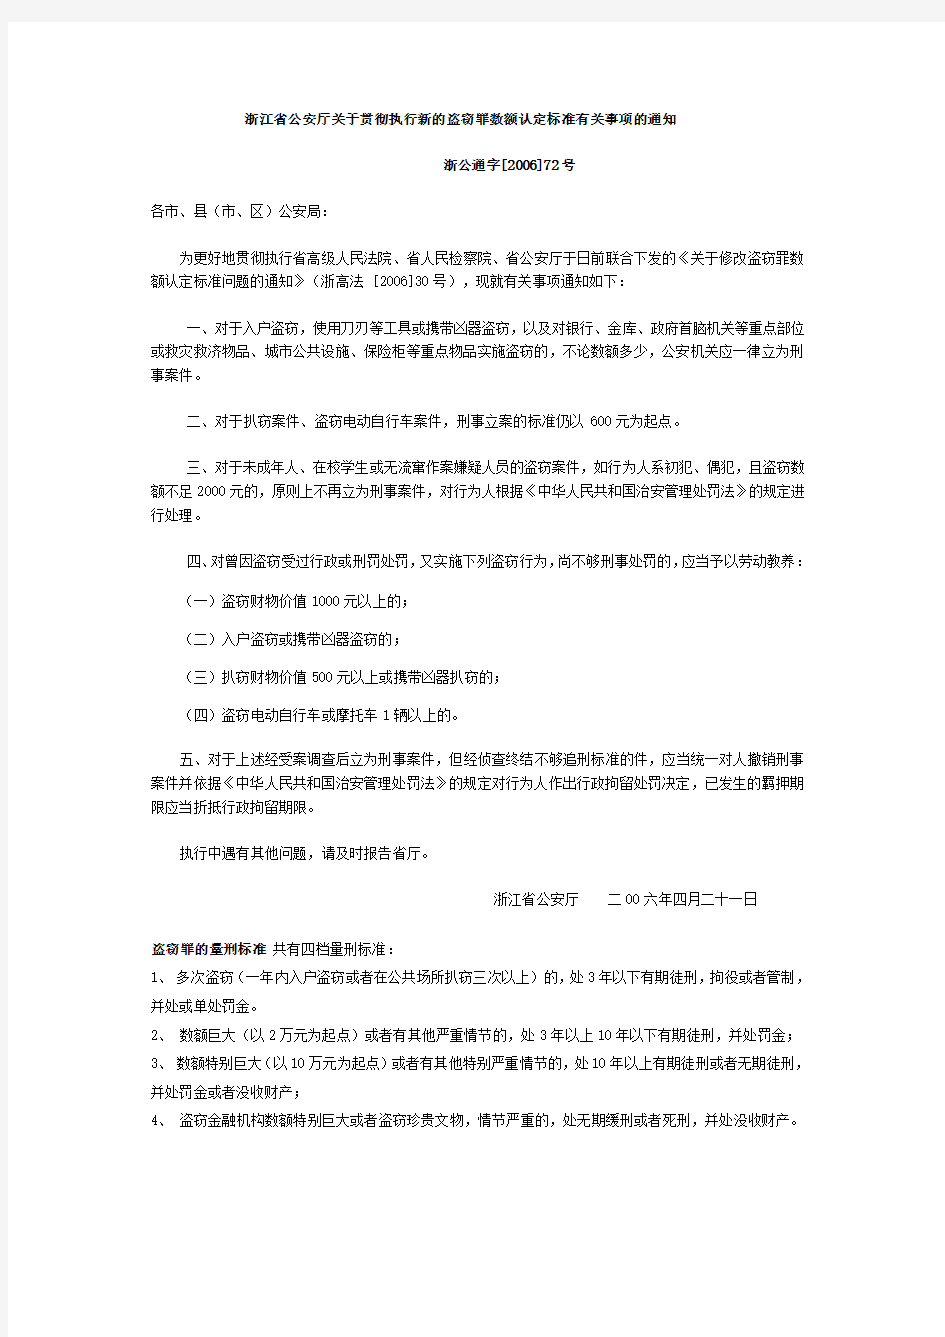 浙江省公安厅关于贯彻执行新的盗窃罪数额认定标准有关事项的通知